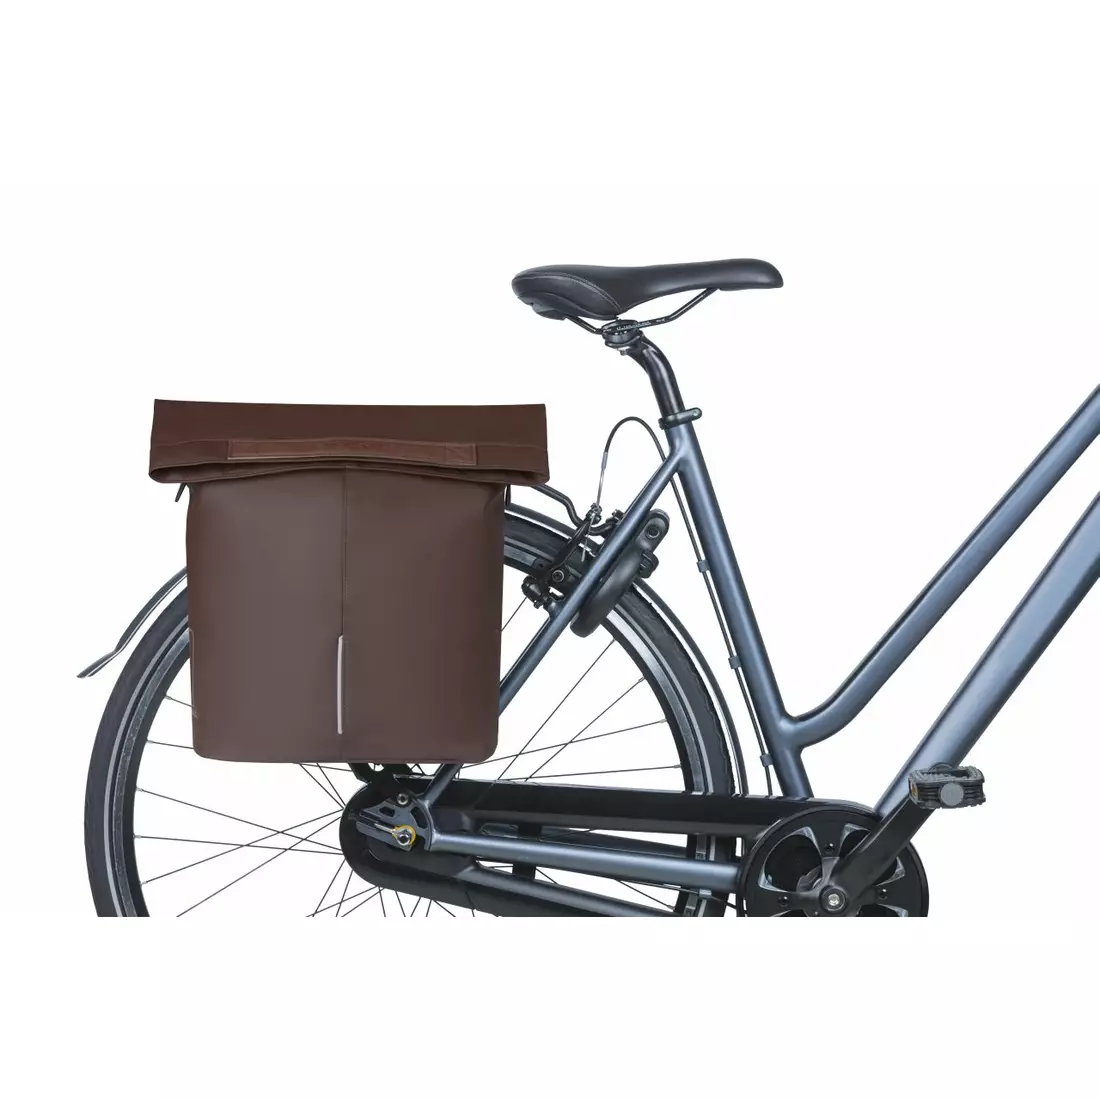 BASIL CITY SHOPPER VEGAN LEATHER zadný kufrík na bicykel 14 L, hnedý